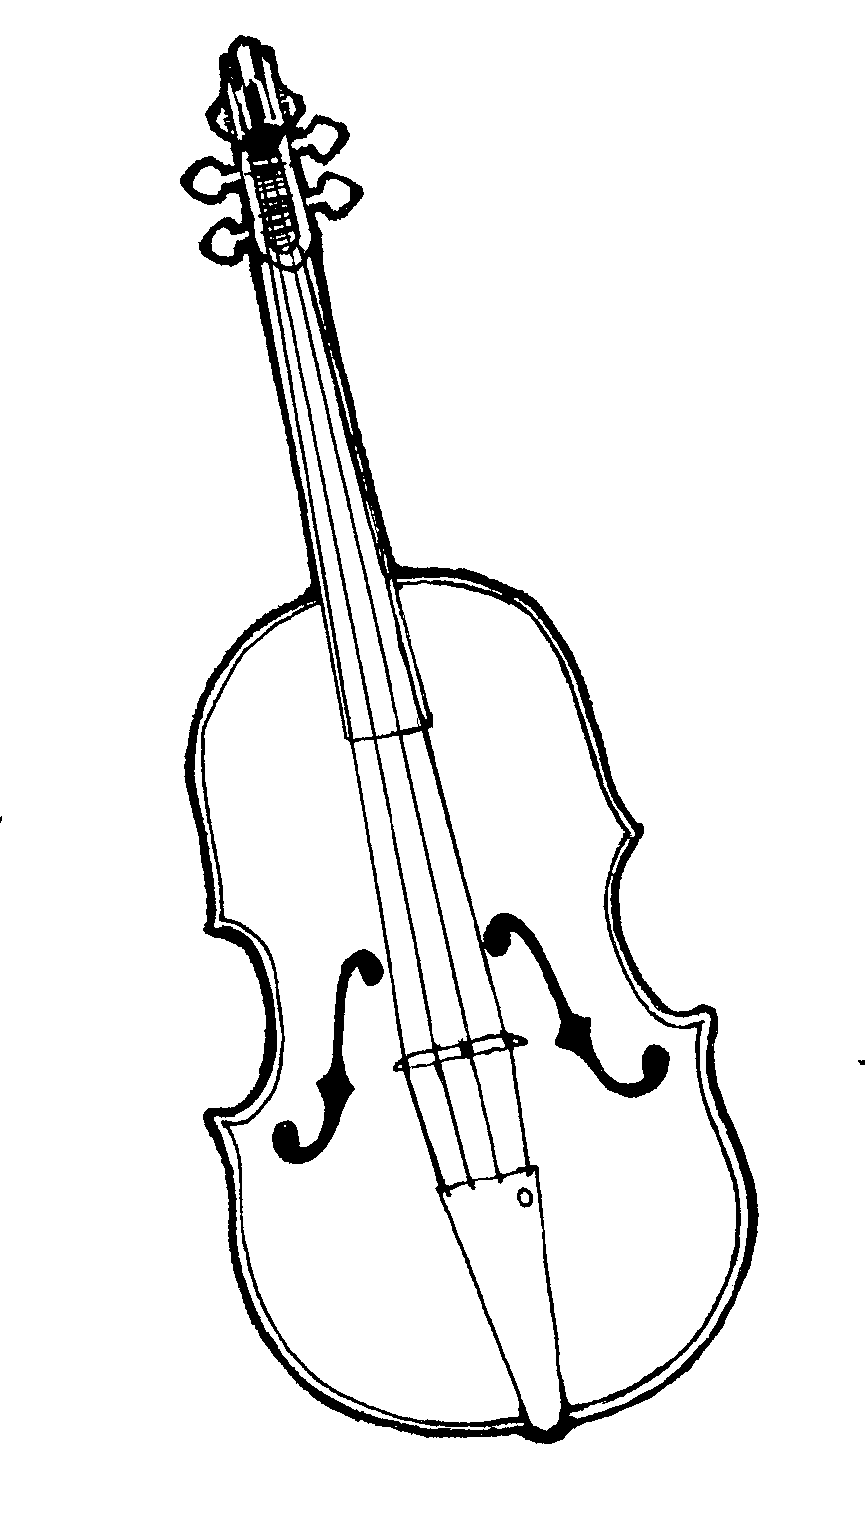 Violin | Mormon Share